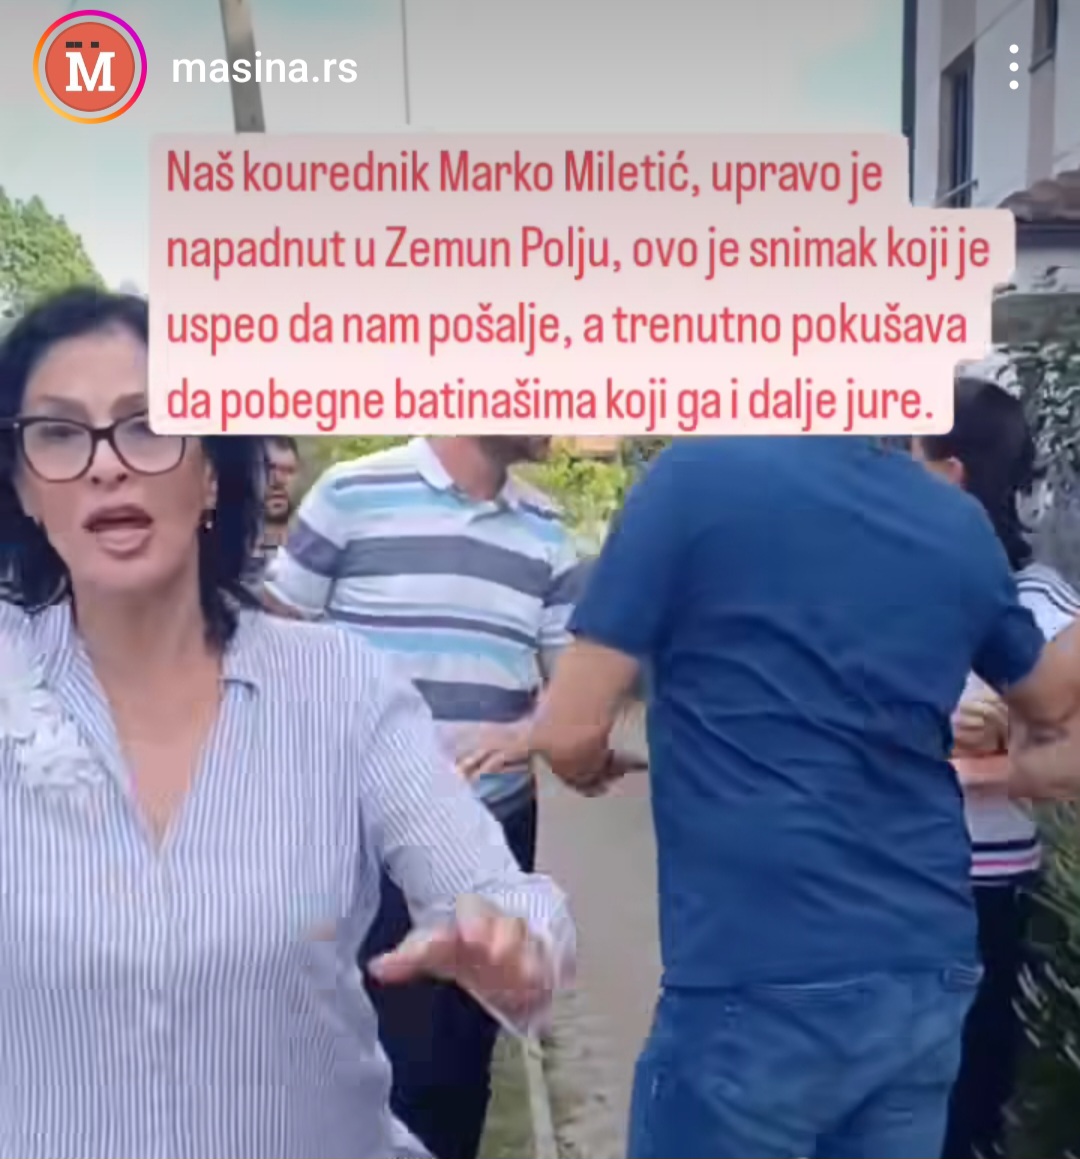 Kourednik masina.rs Marko Miletić napadnut je u Zemun Polju